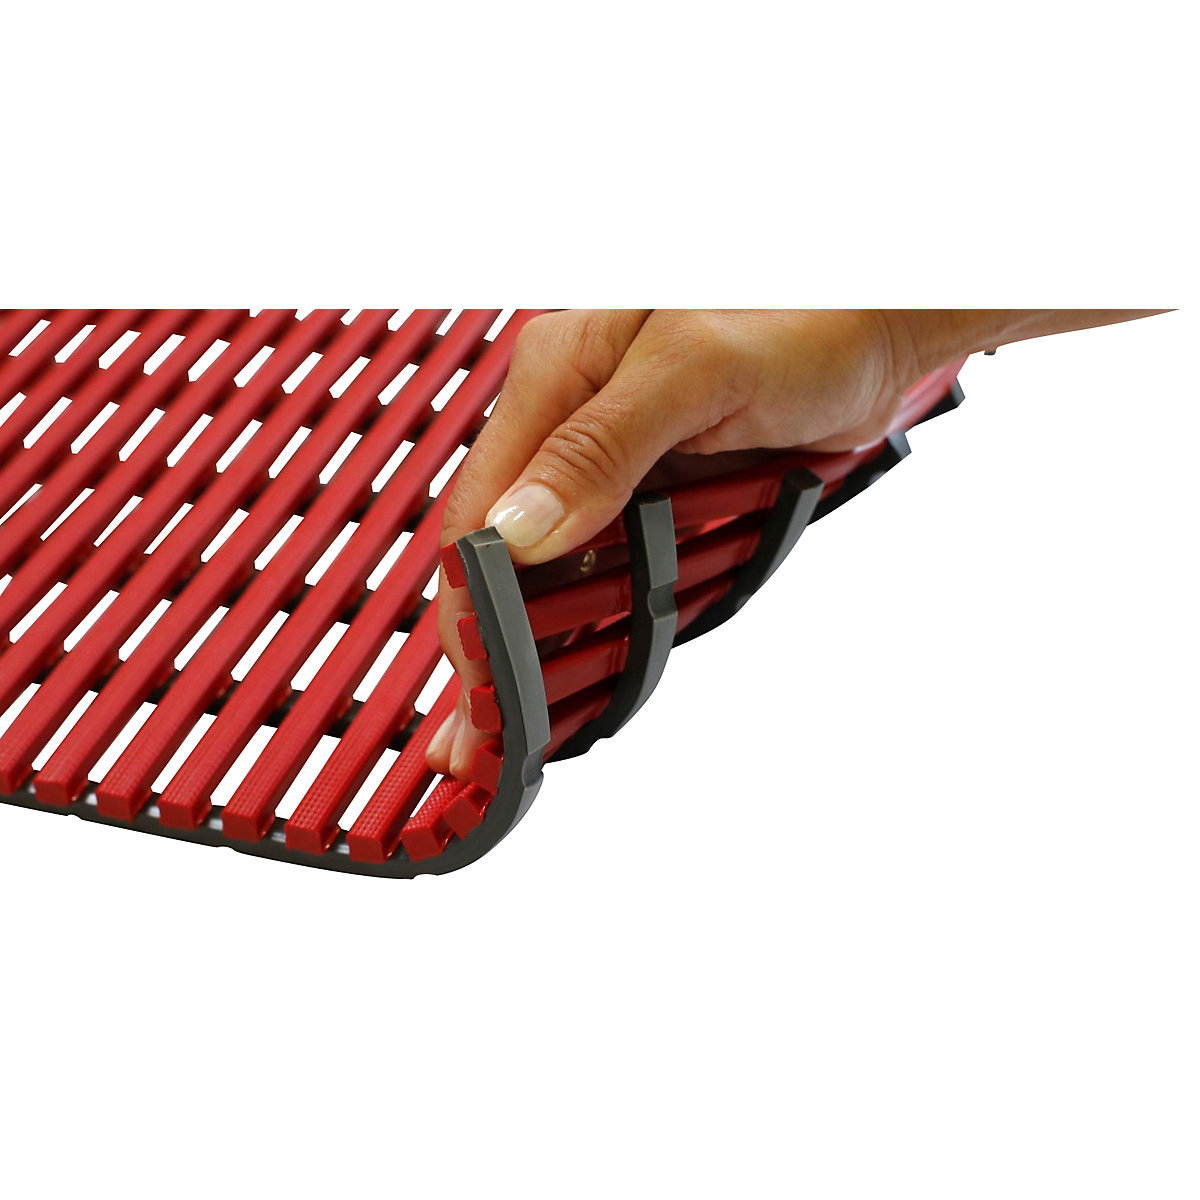 Wet room mat, anti-bacterial – EHA, per metre, red, width 600 mm-6